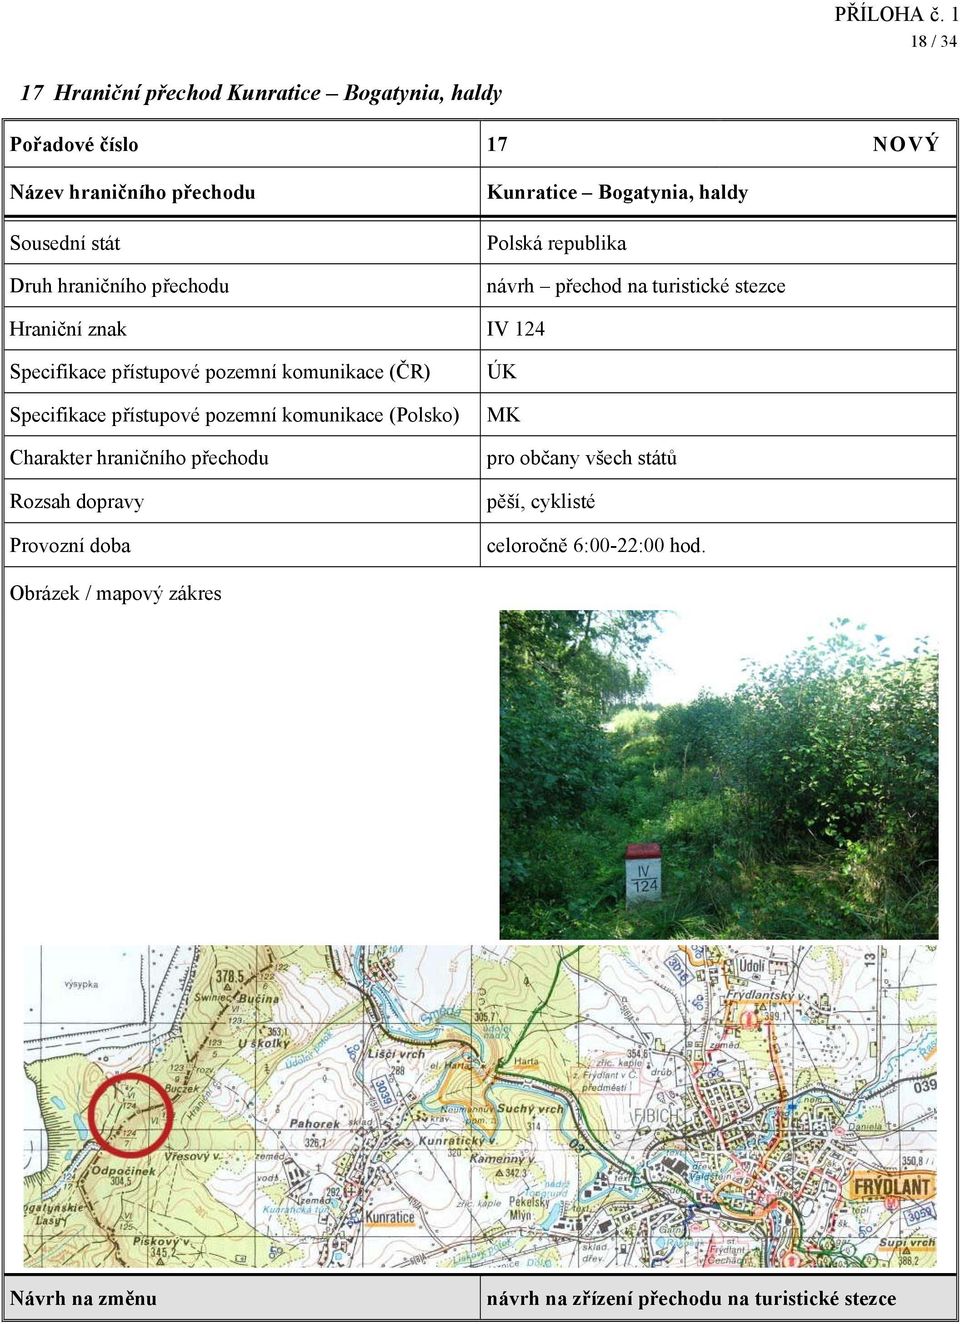 124 Specifikace přístupové pozemní komunikace (Polsko) ÚK pěší, cyklisté